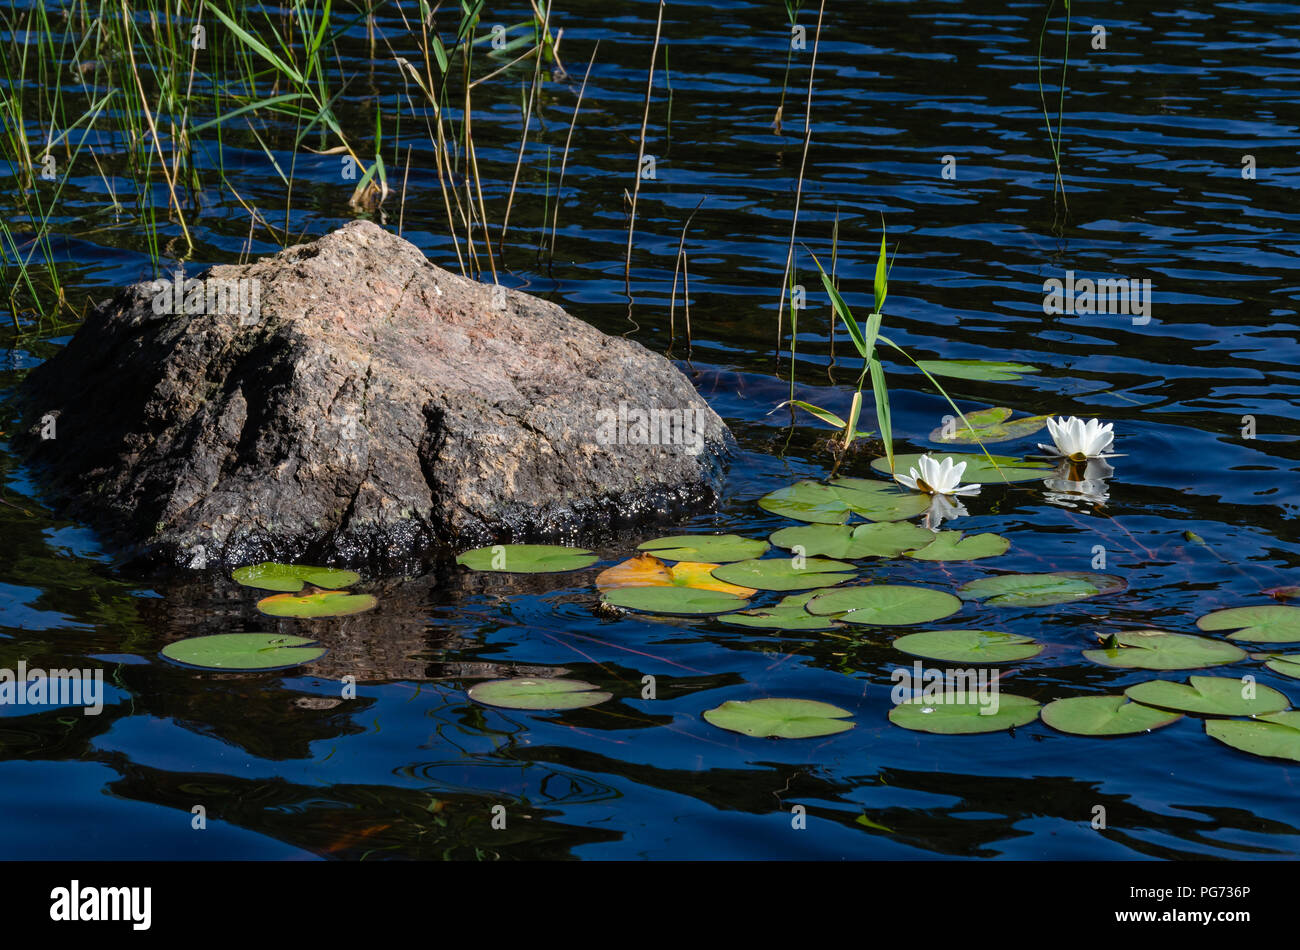 Un intimo paesaggio di fiori bianchi accanto a una roccia grezza in acqua Foto Stock